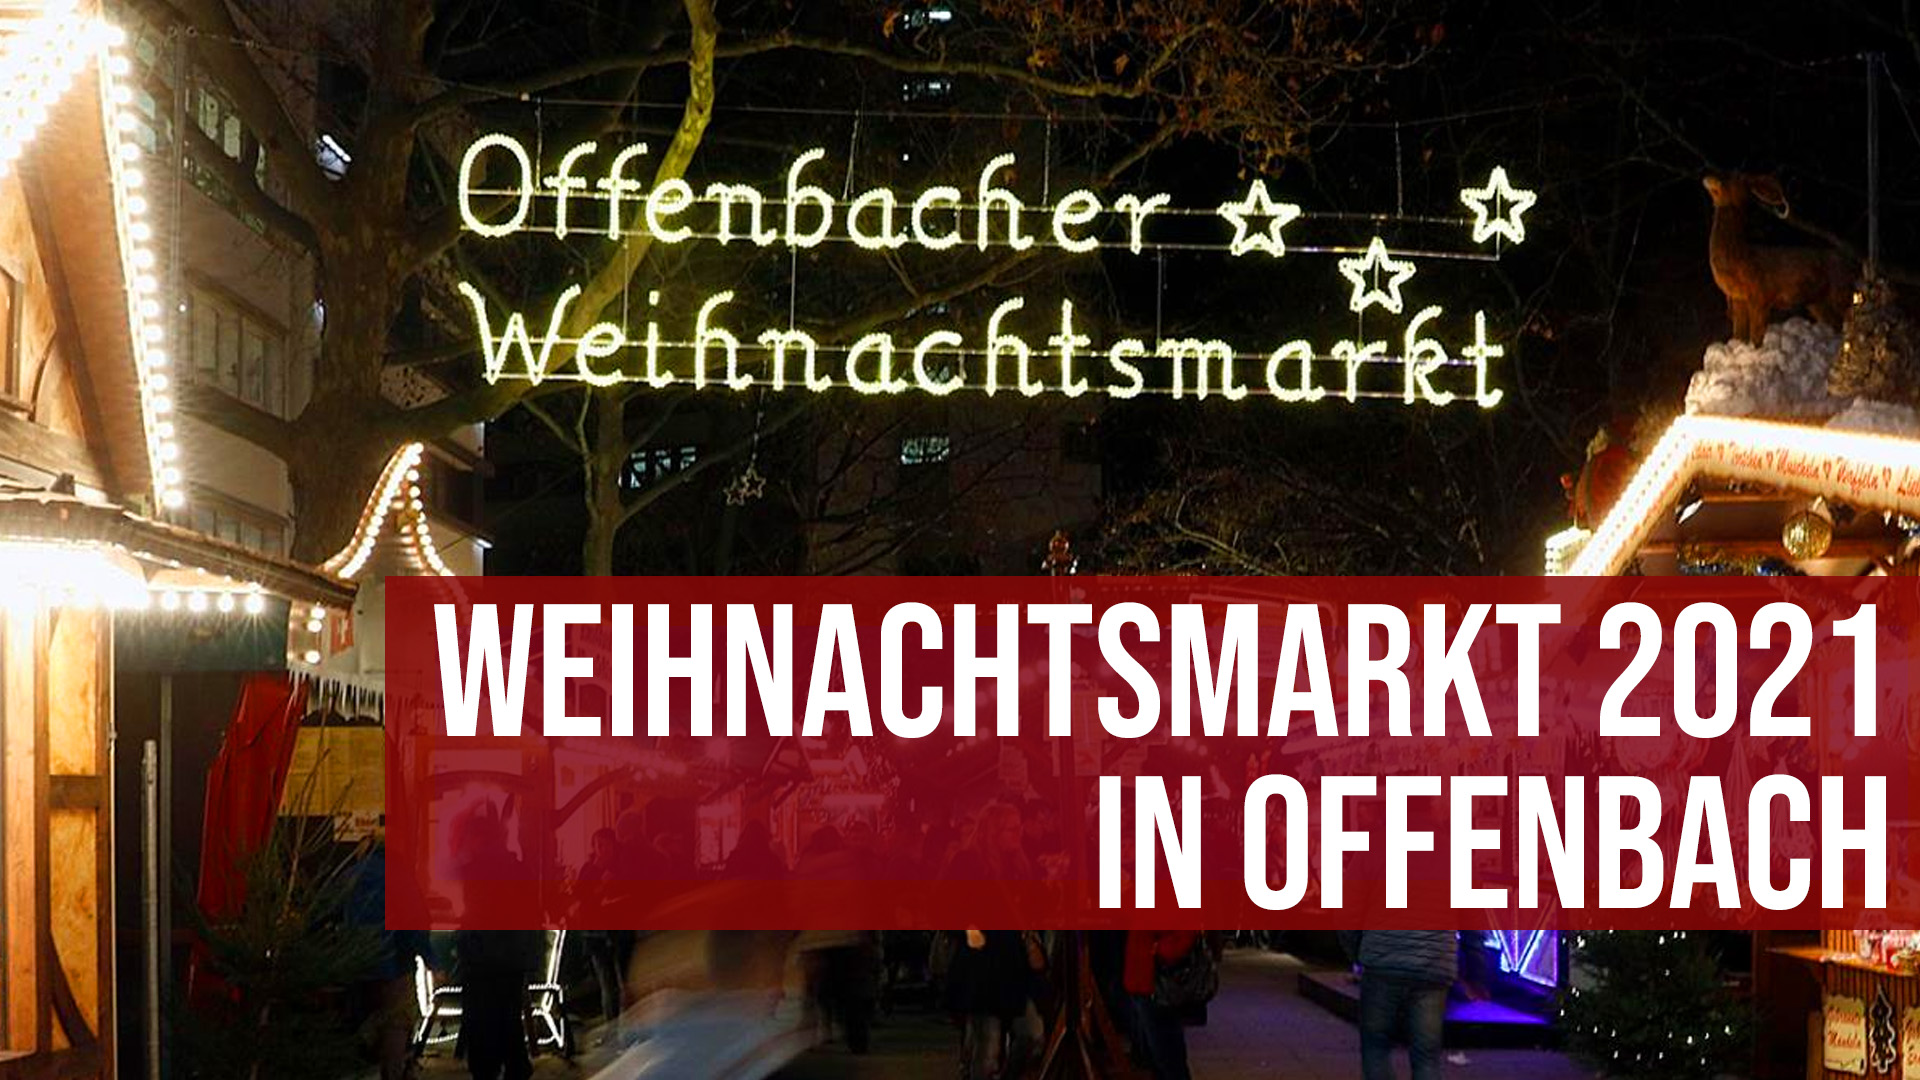 Weihnachtsmarkt 2021 Offenbach findet mit Hygienekonzept statt